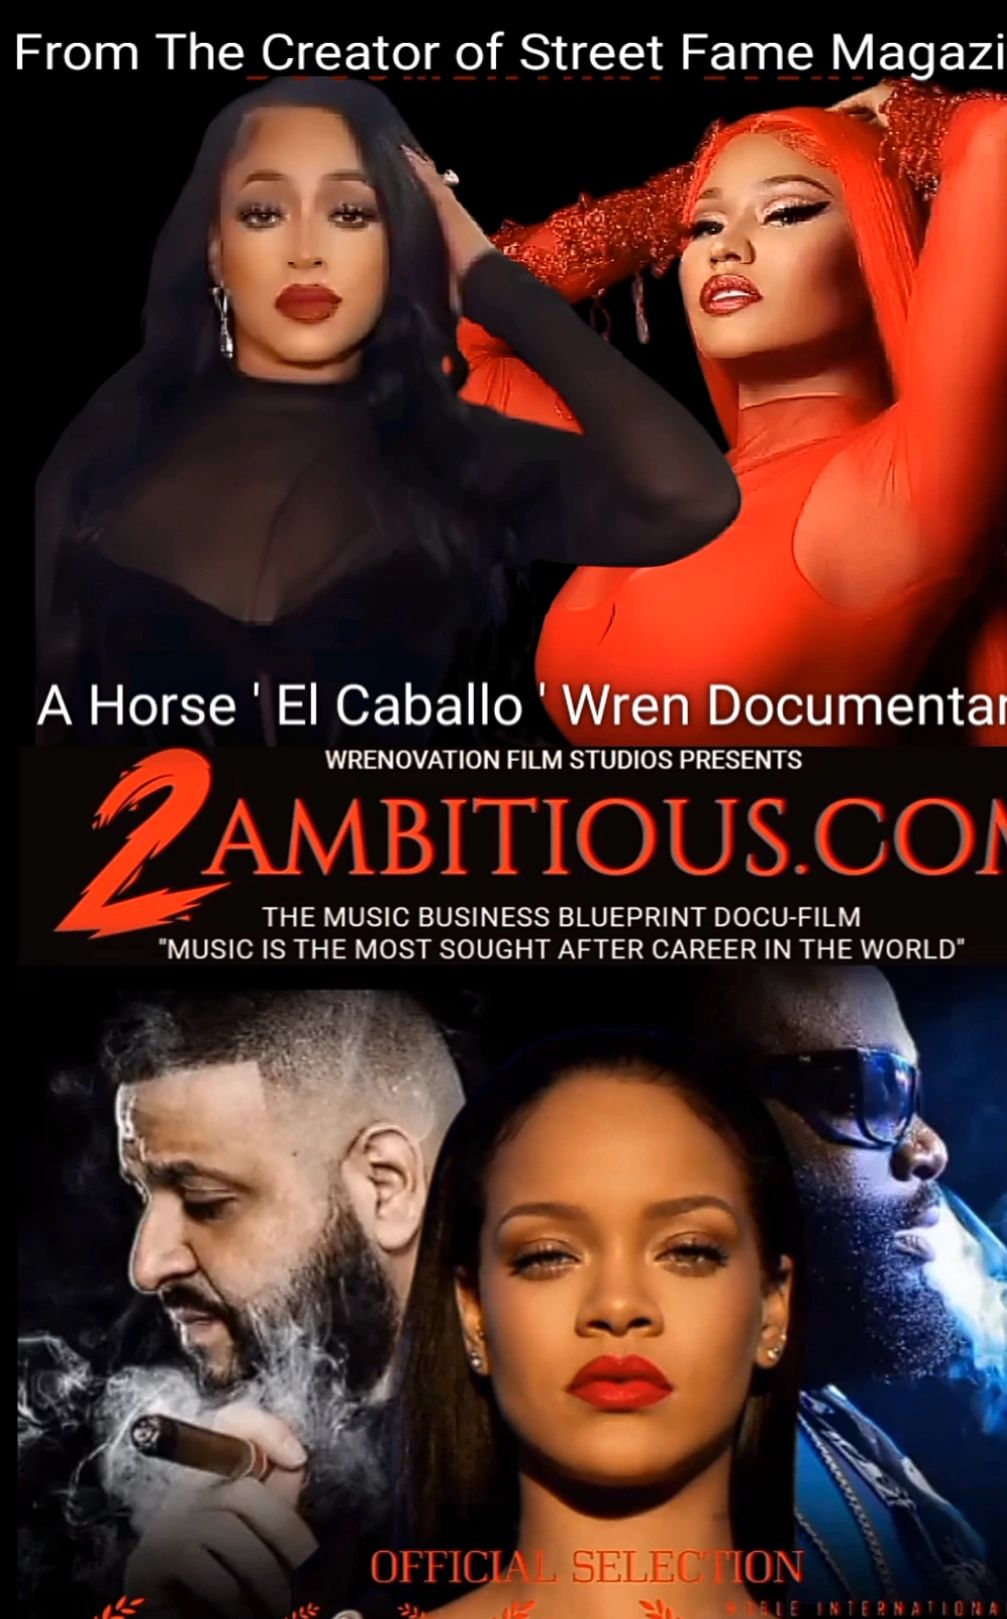 Horse ' El Caballo ' Wren 2ambitious.com music industry docuseries 